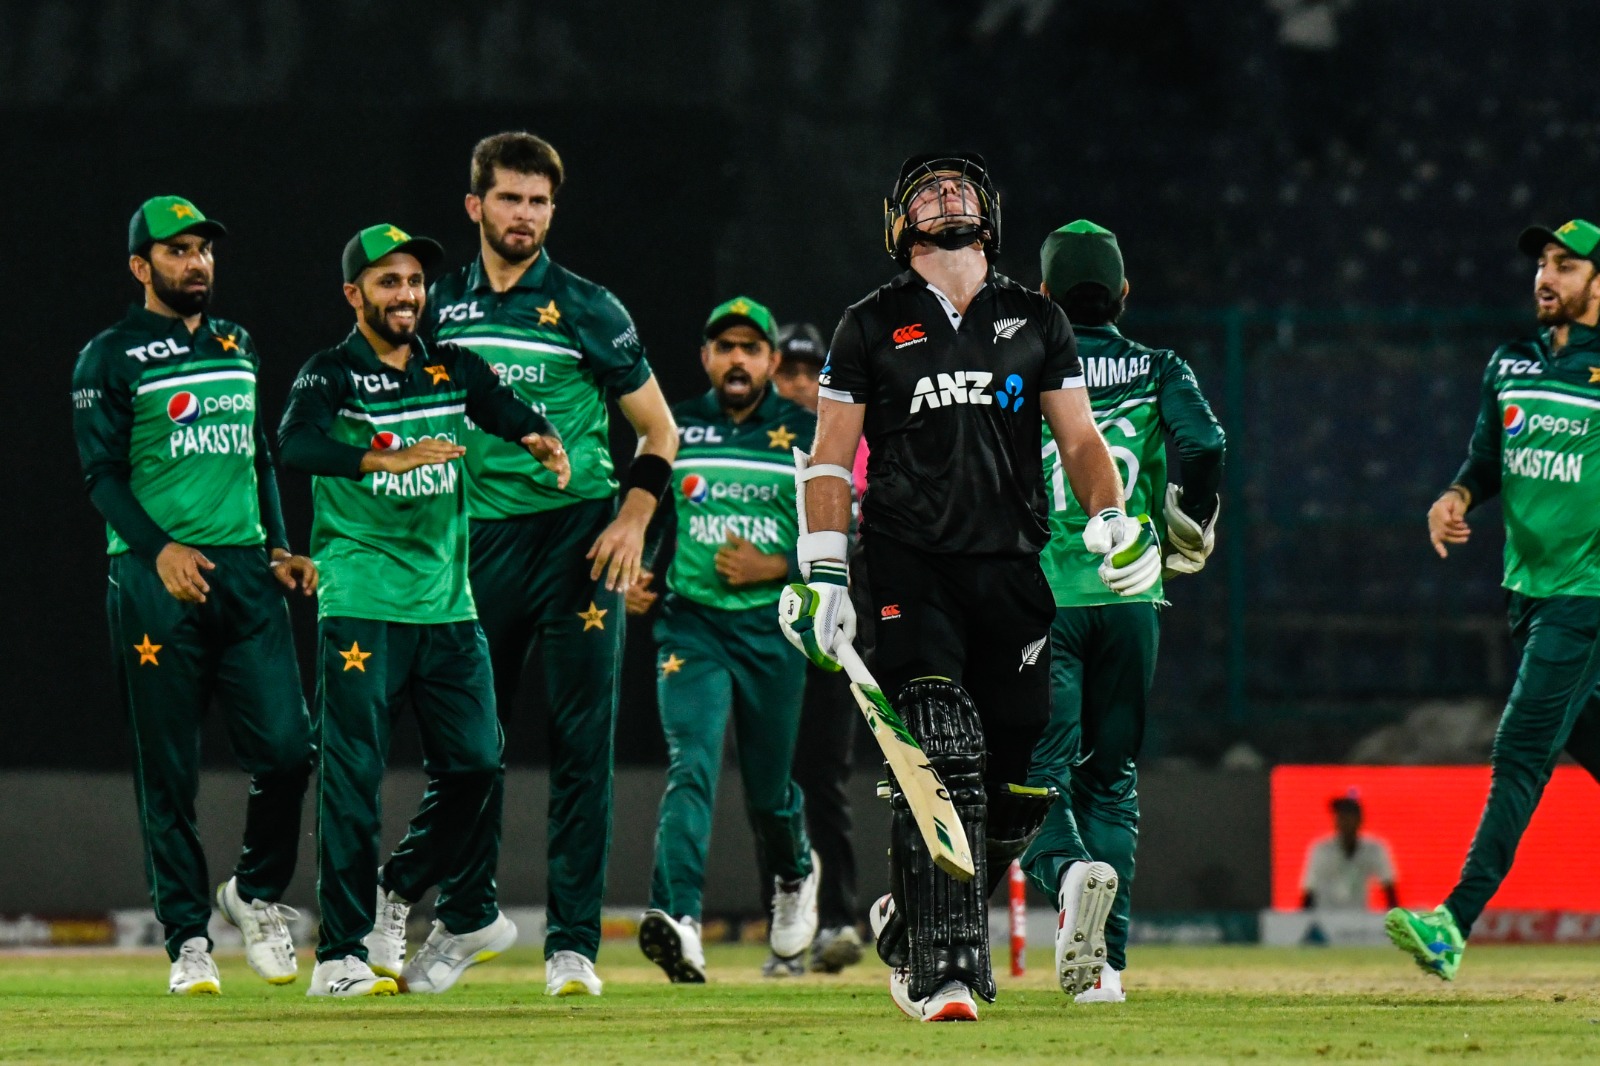 Pak Vs Nz: बाबर ने जड़ा शतक, गेंदबाजों ने ढाया कहर, पाकिस्तान ने न्यूजीलैंड को हराकर 4-0 से हासिल की बढ़त